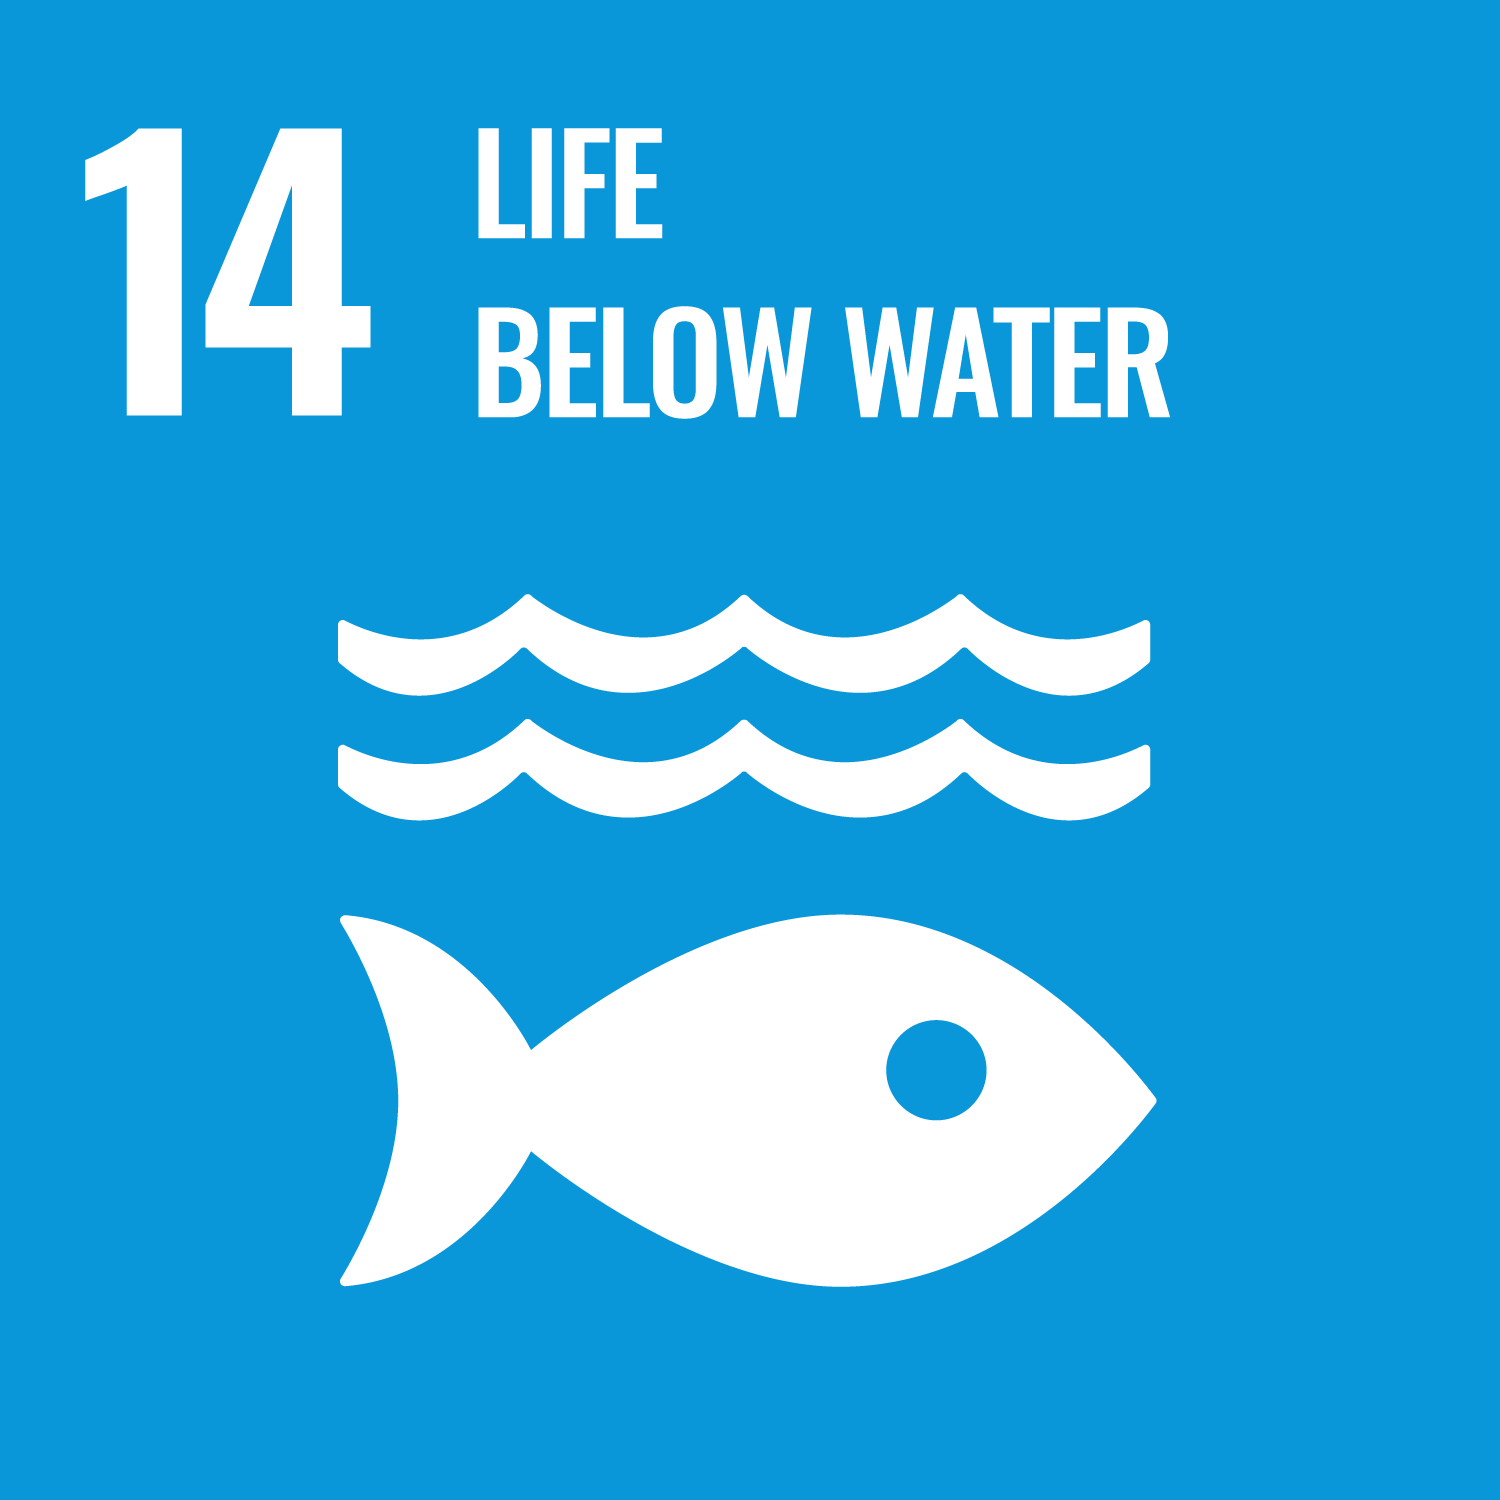 UN SDG 14 image